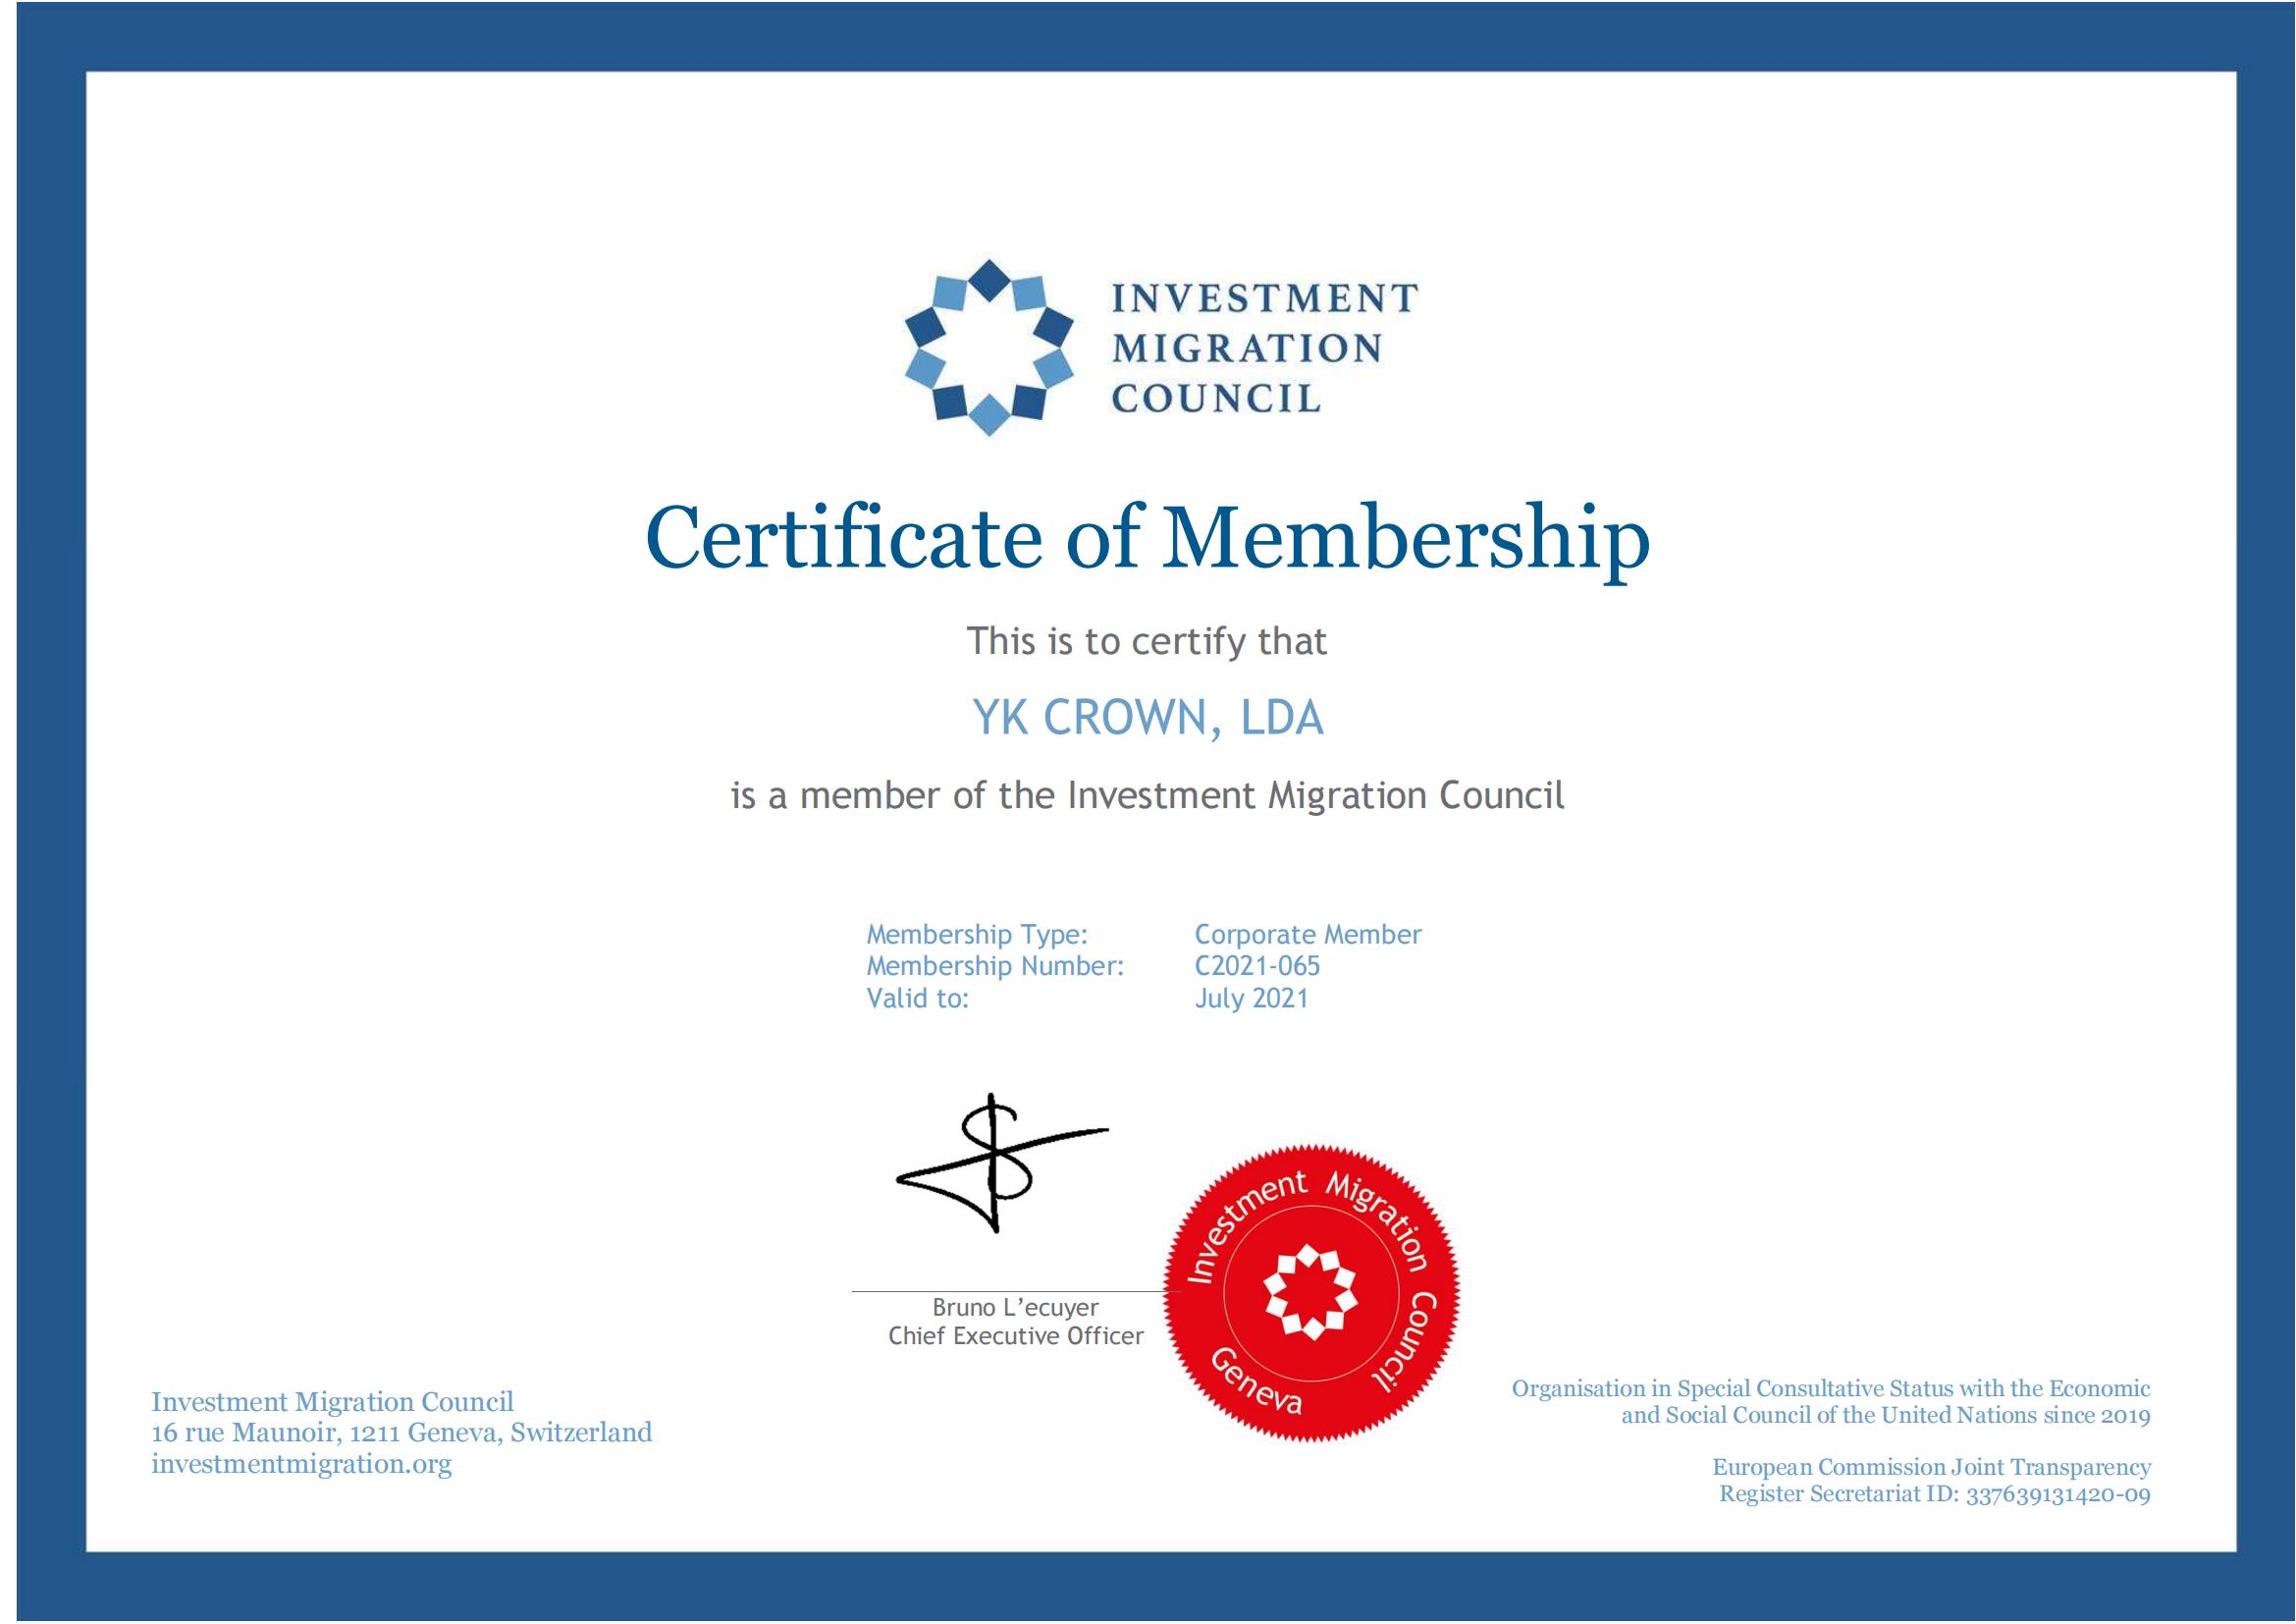 IMC Membership Certificate of Crown Capital (FCR)